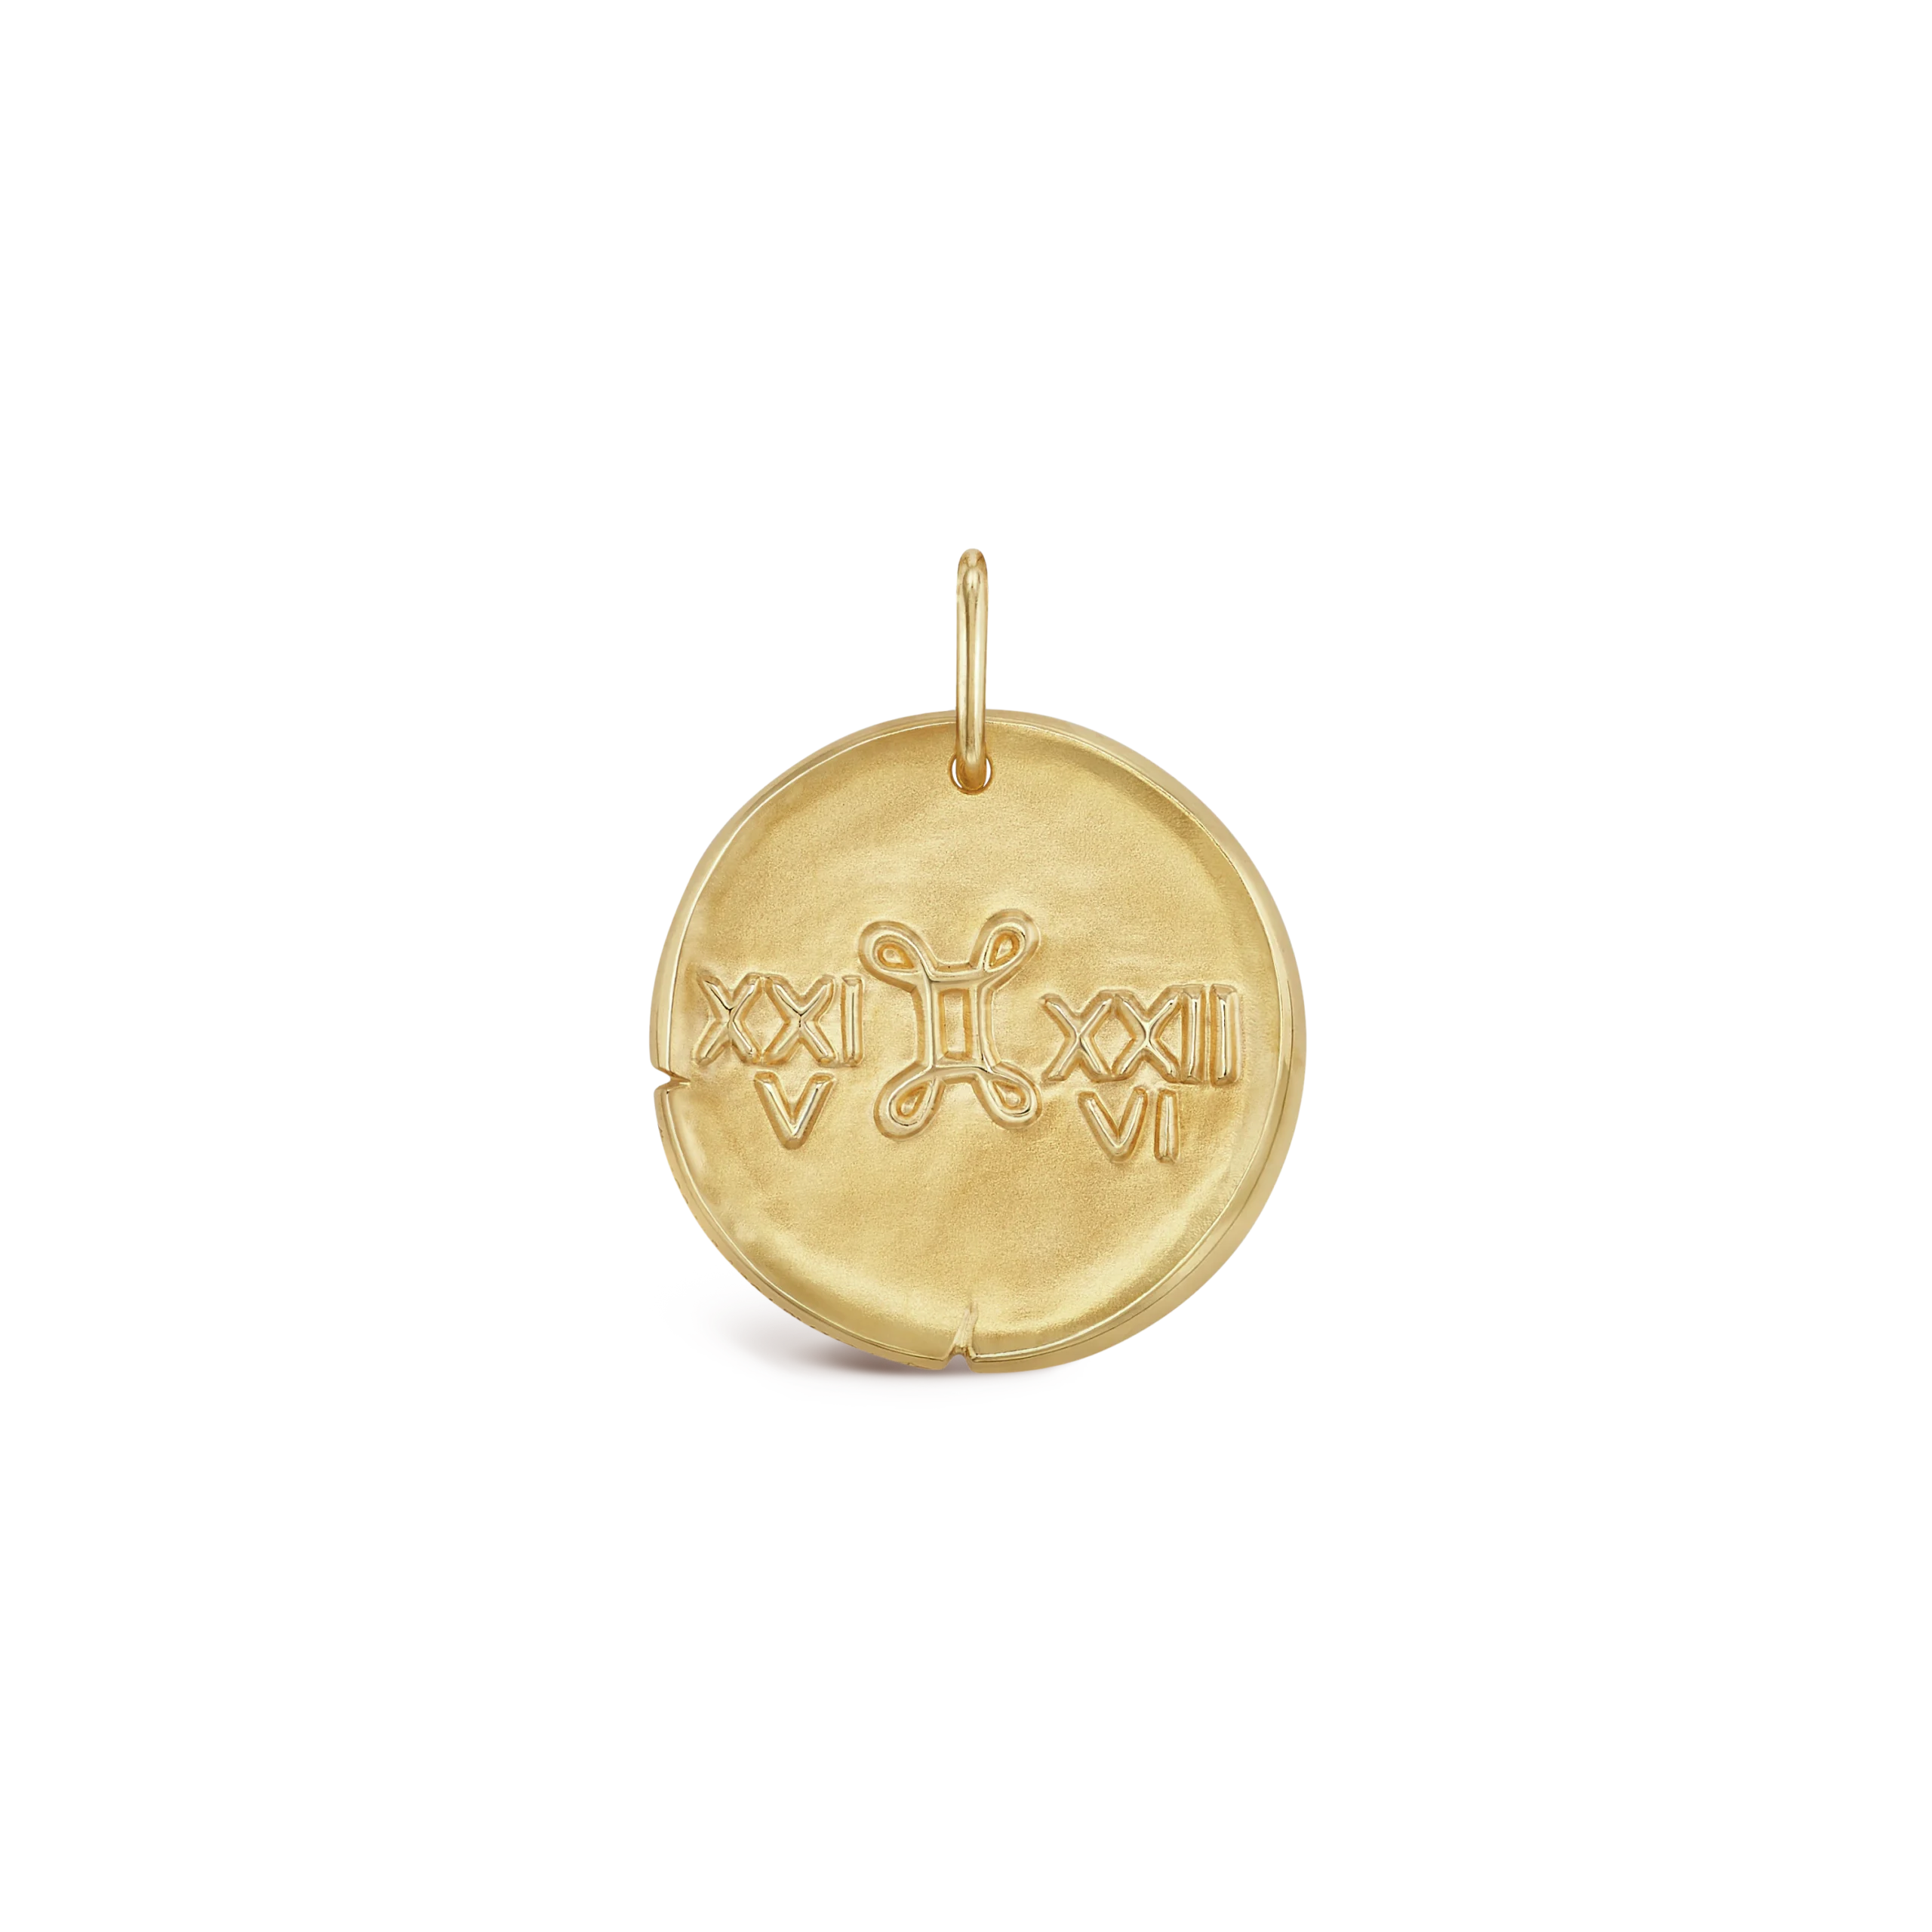 Zodiaque-medal-Geminorum-Gemini-2-scaled-1.webp